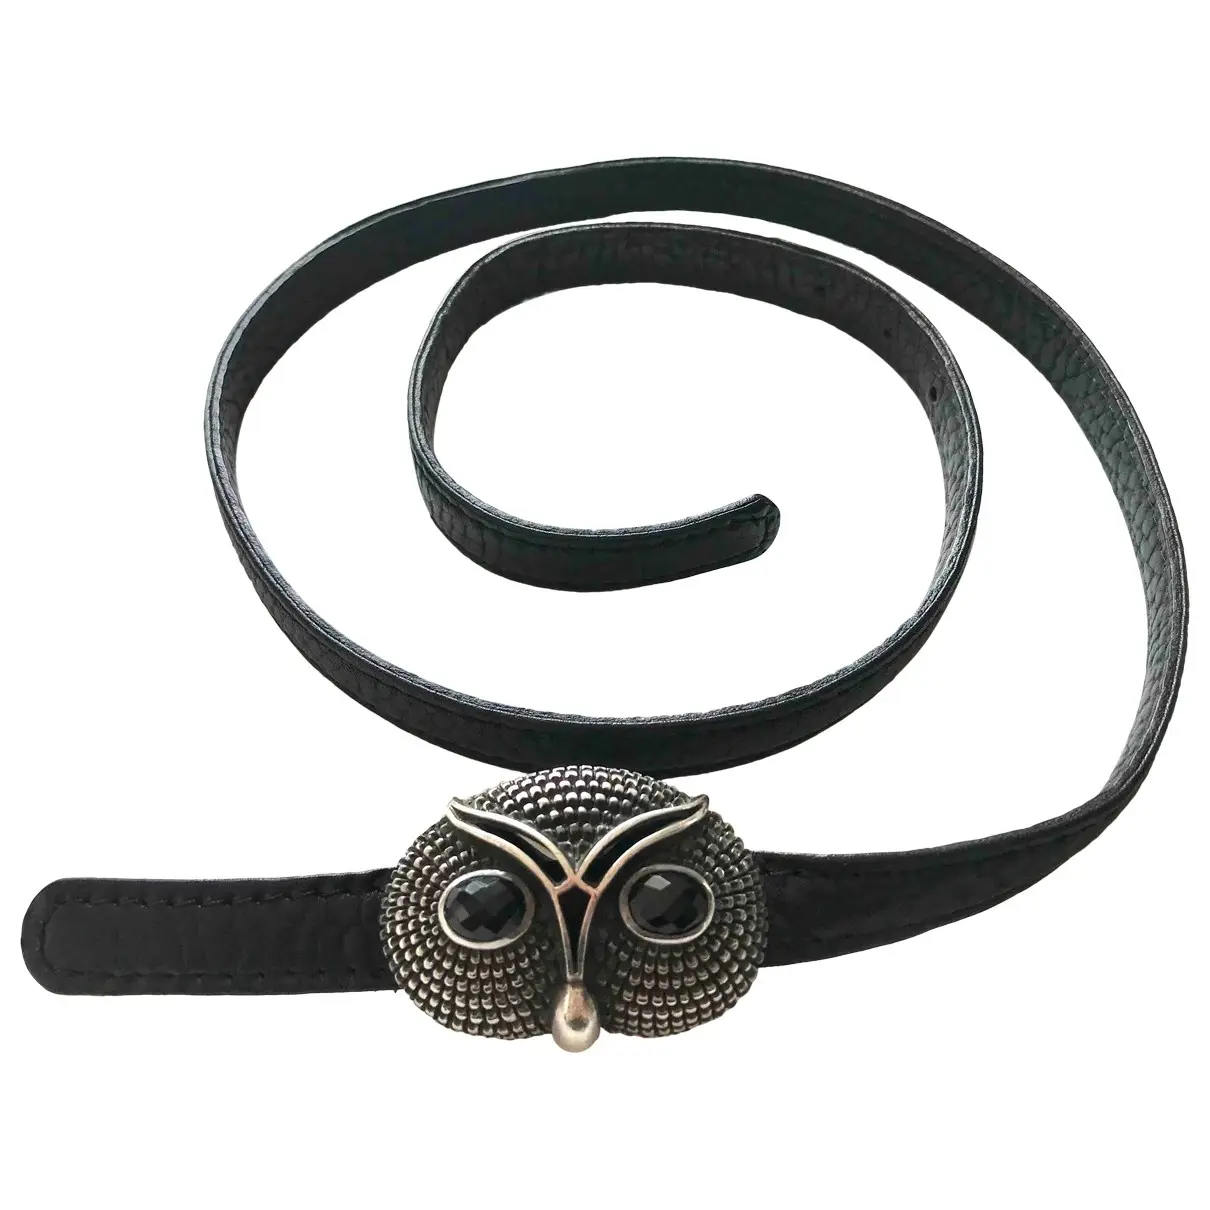 Leather belt Ugo Cacciatori